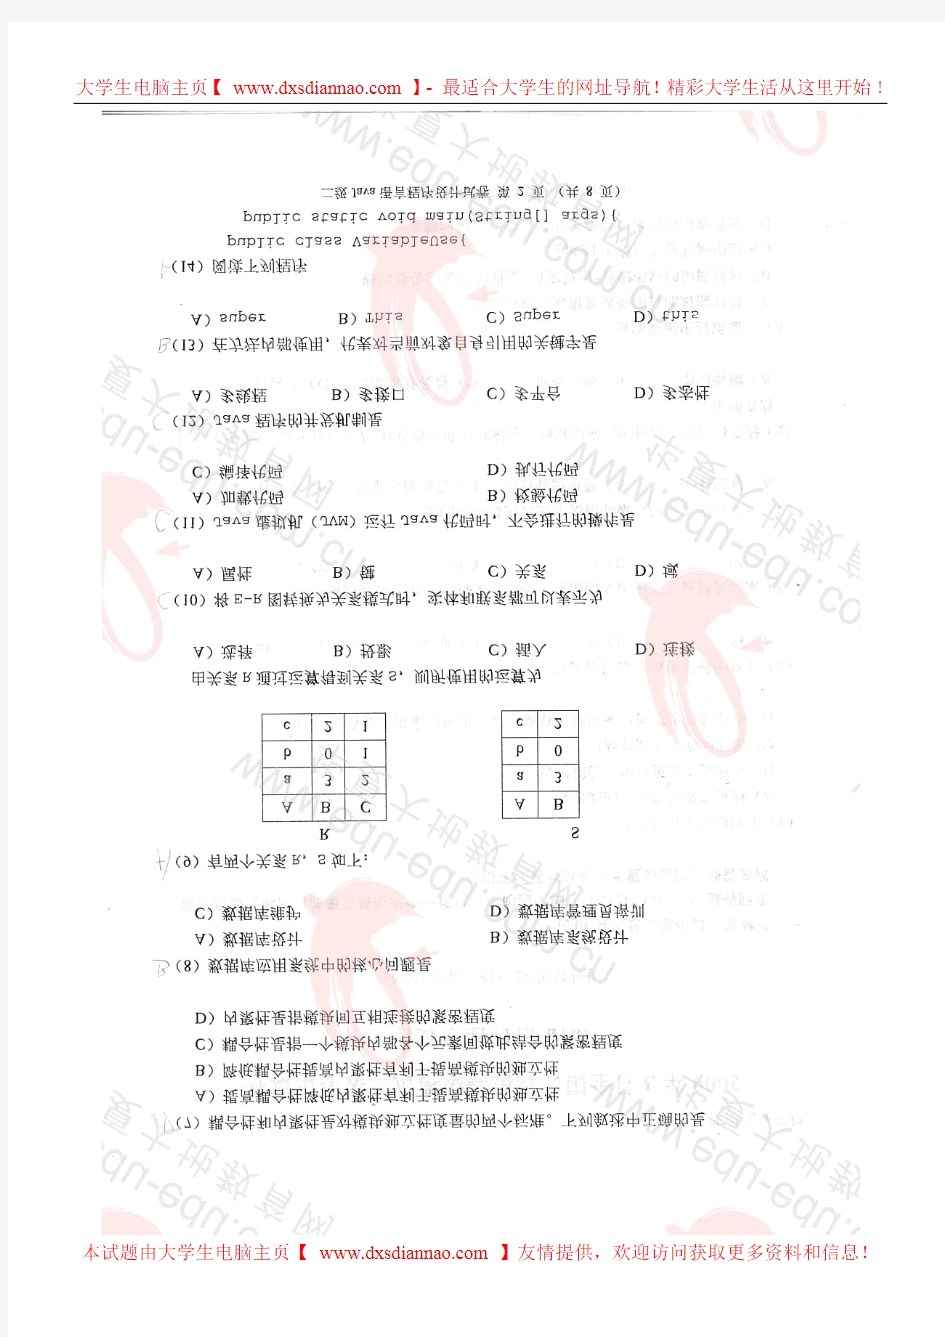 2009年3月计算机等级考试二级_JAVA笔试真题及答案